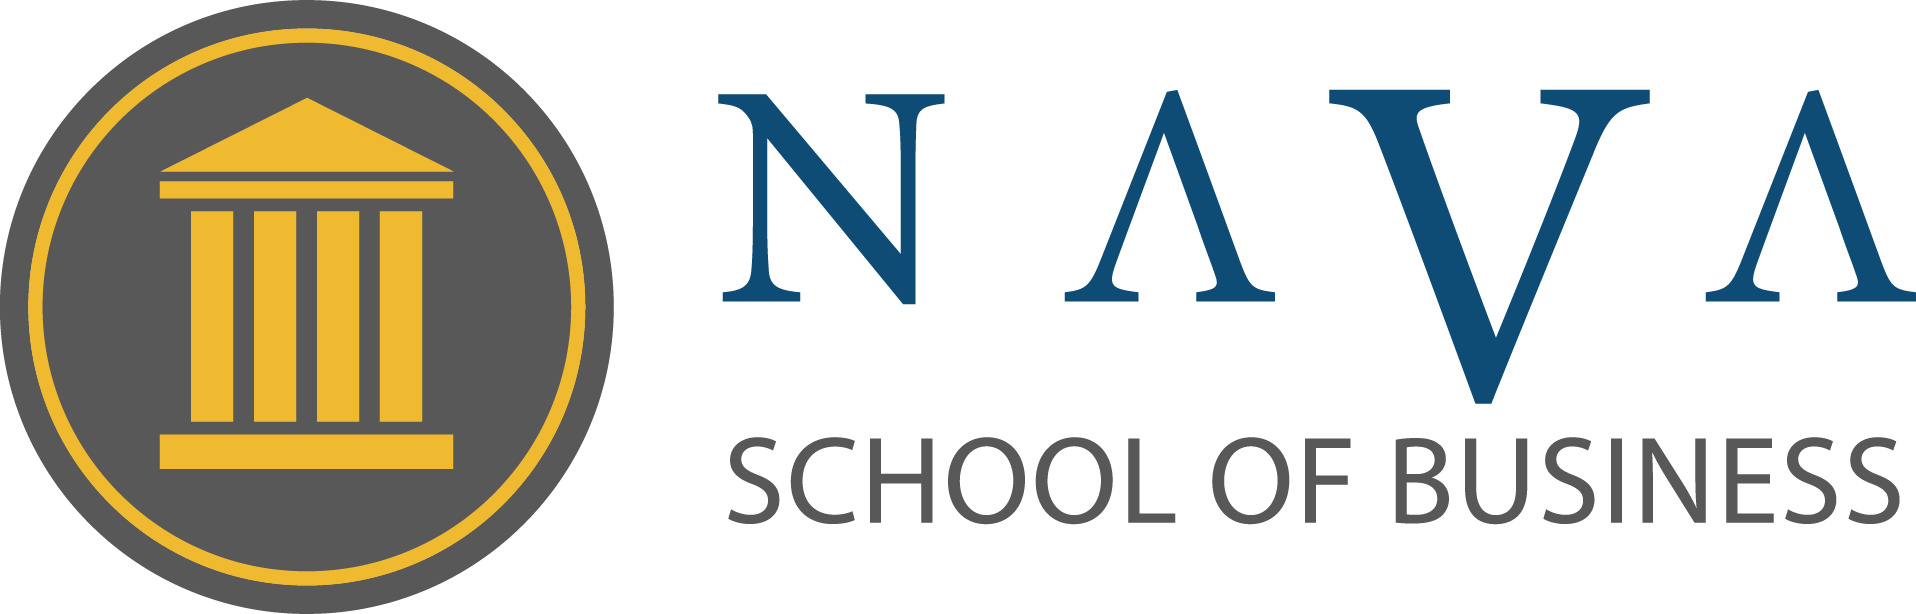 Nava School of Business